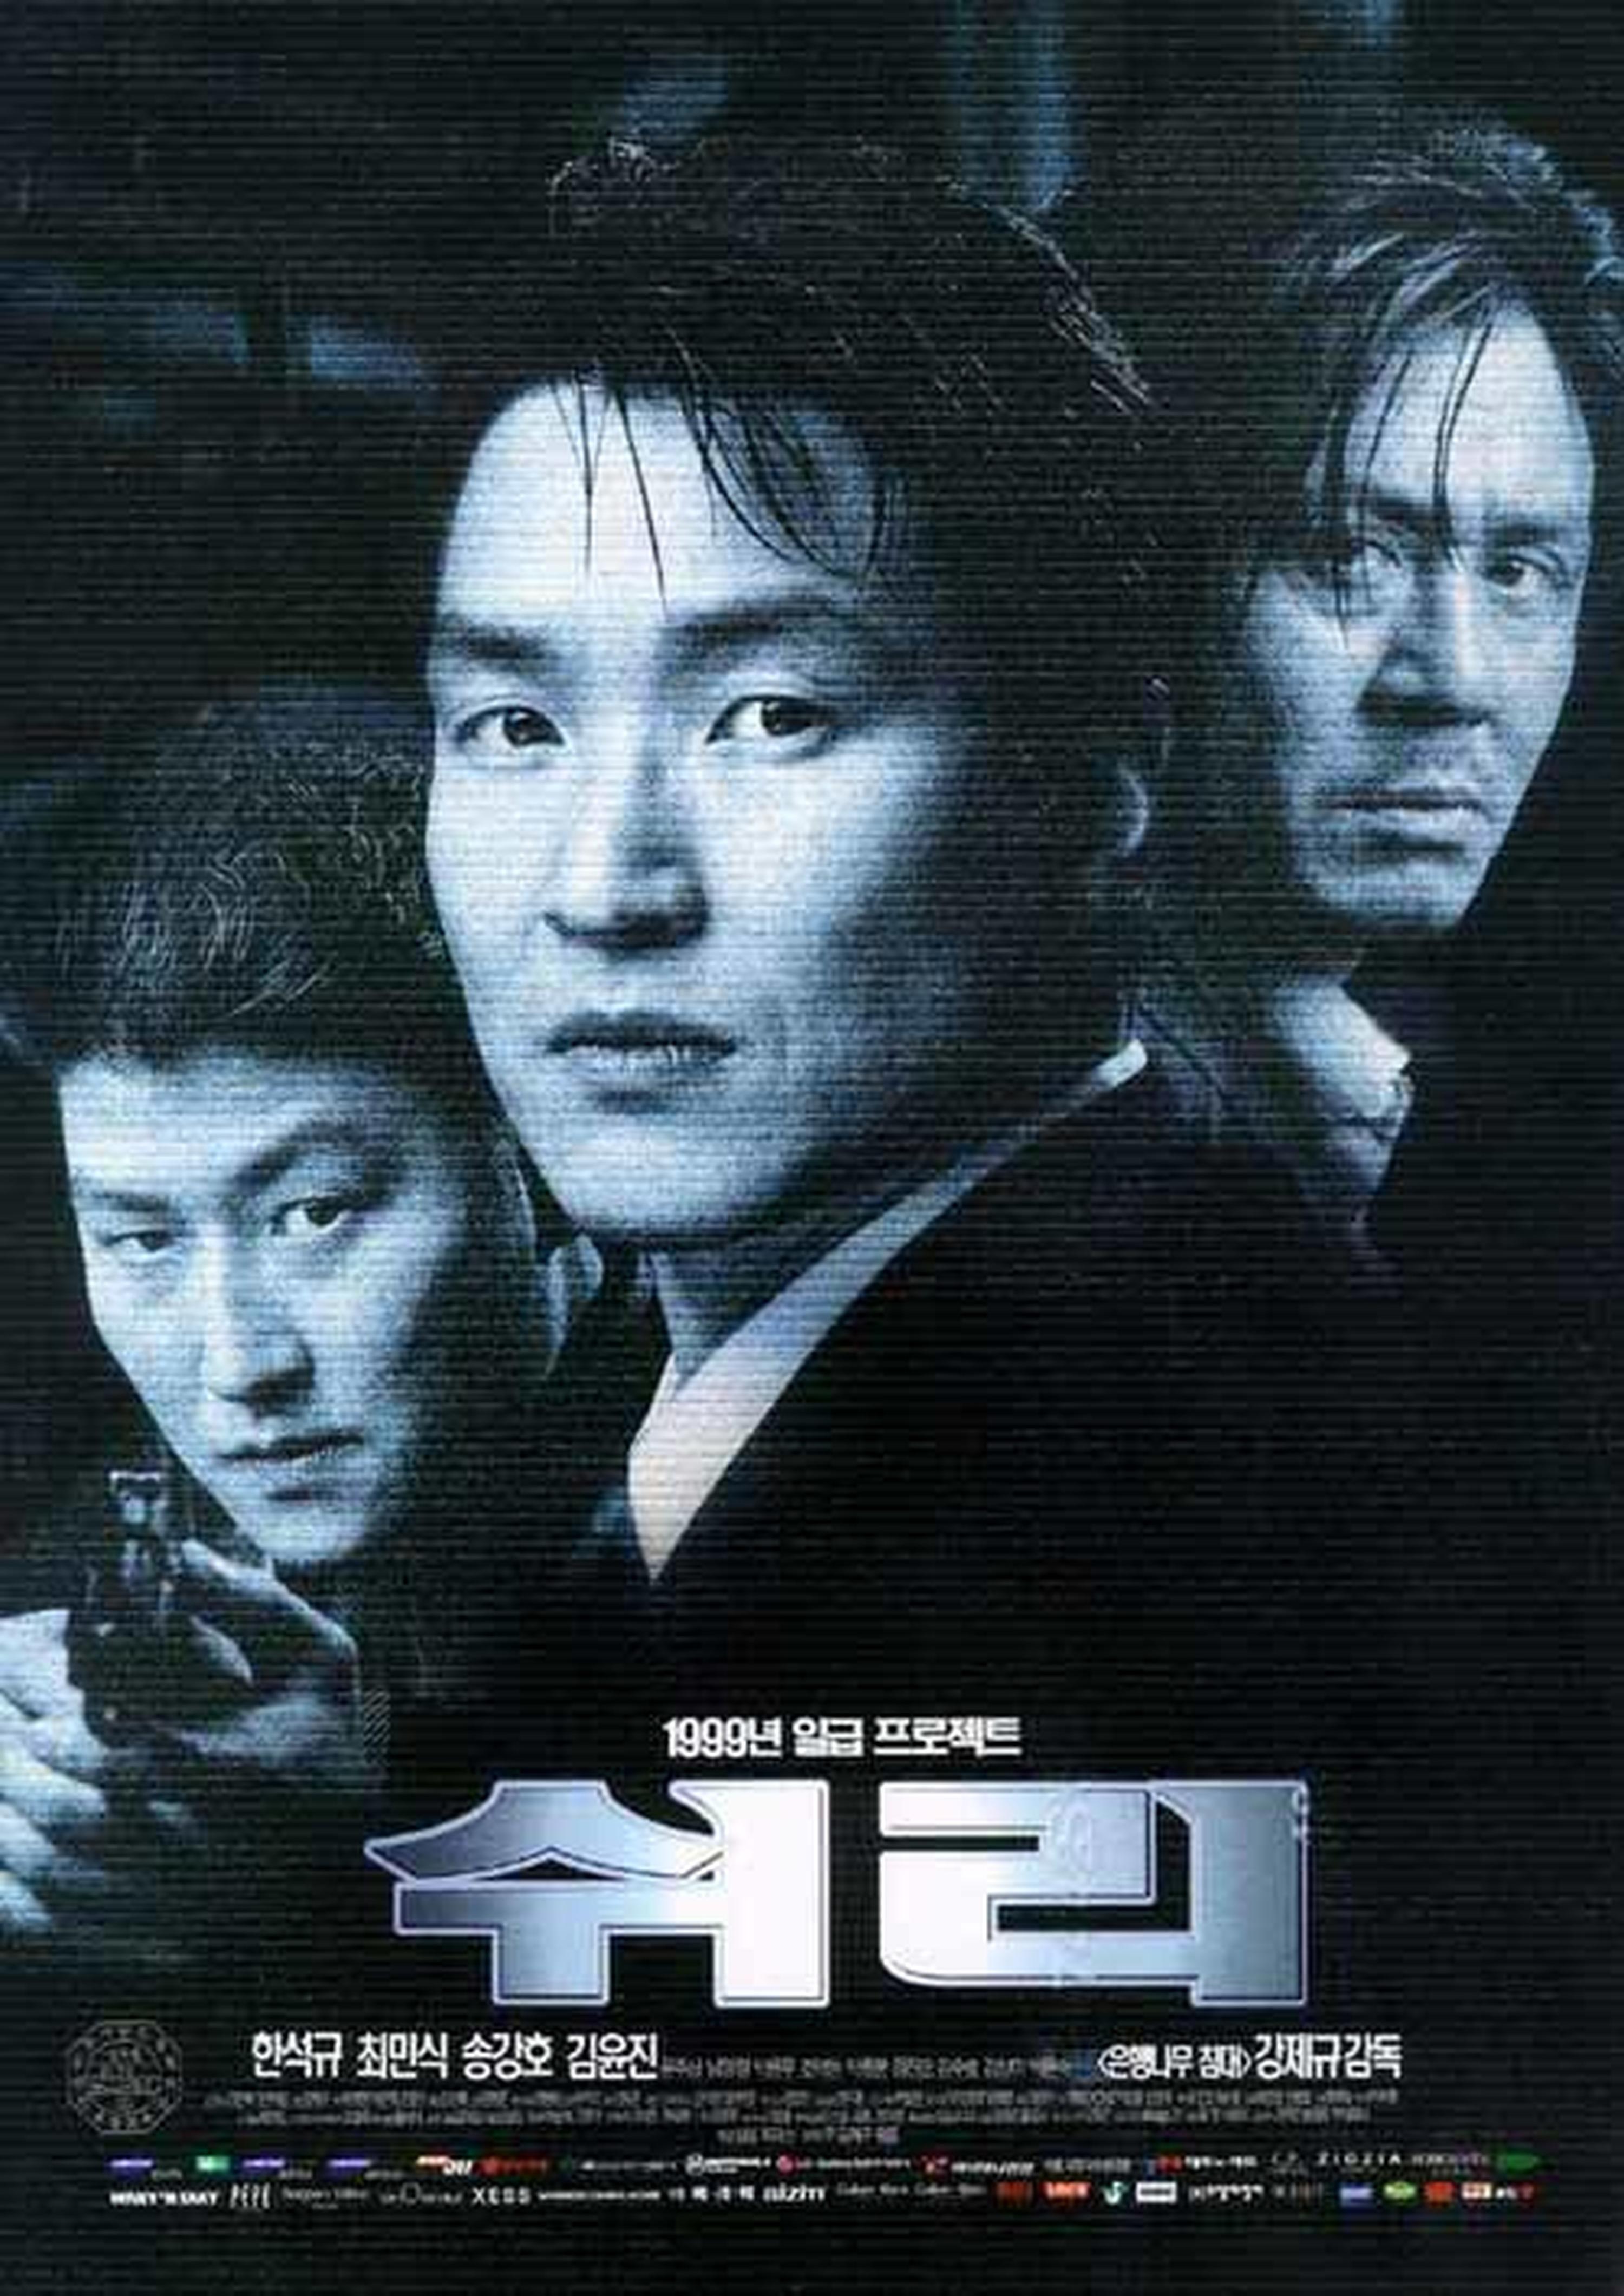 【1990-2000】《生死谍变》 (1999)导演姜帝圭。打响拯救韩国本土电影工业第一枪，据说它刷新了泰坦尼克在韩国本土票房的记录, 从某种意义上, 它养成了韩国电影观众进影院观影的习惯。